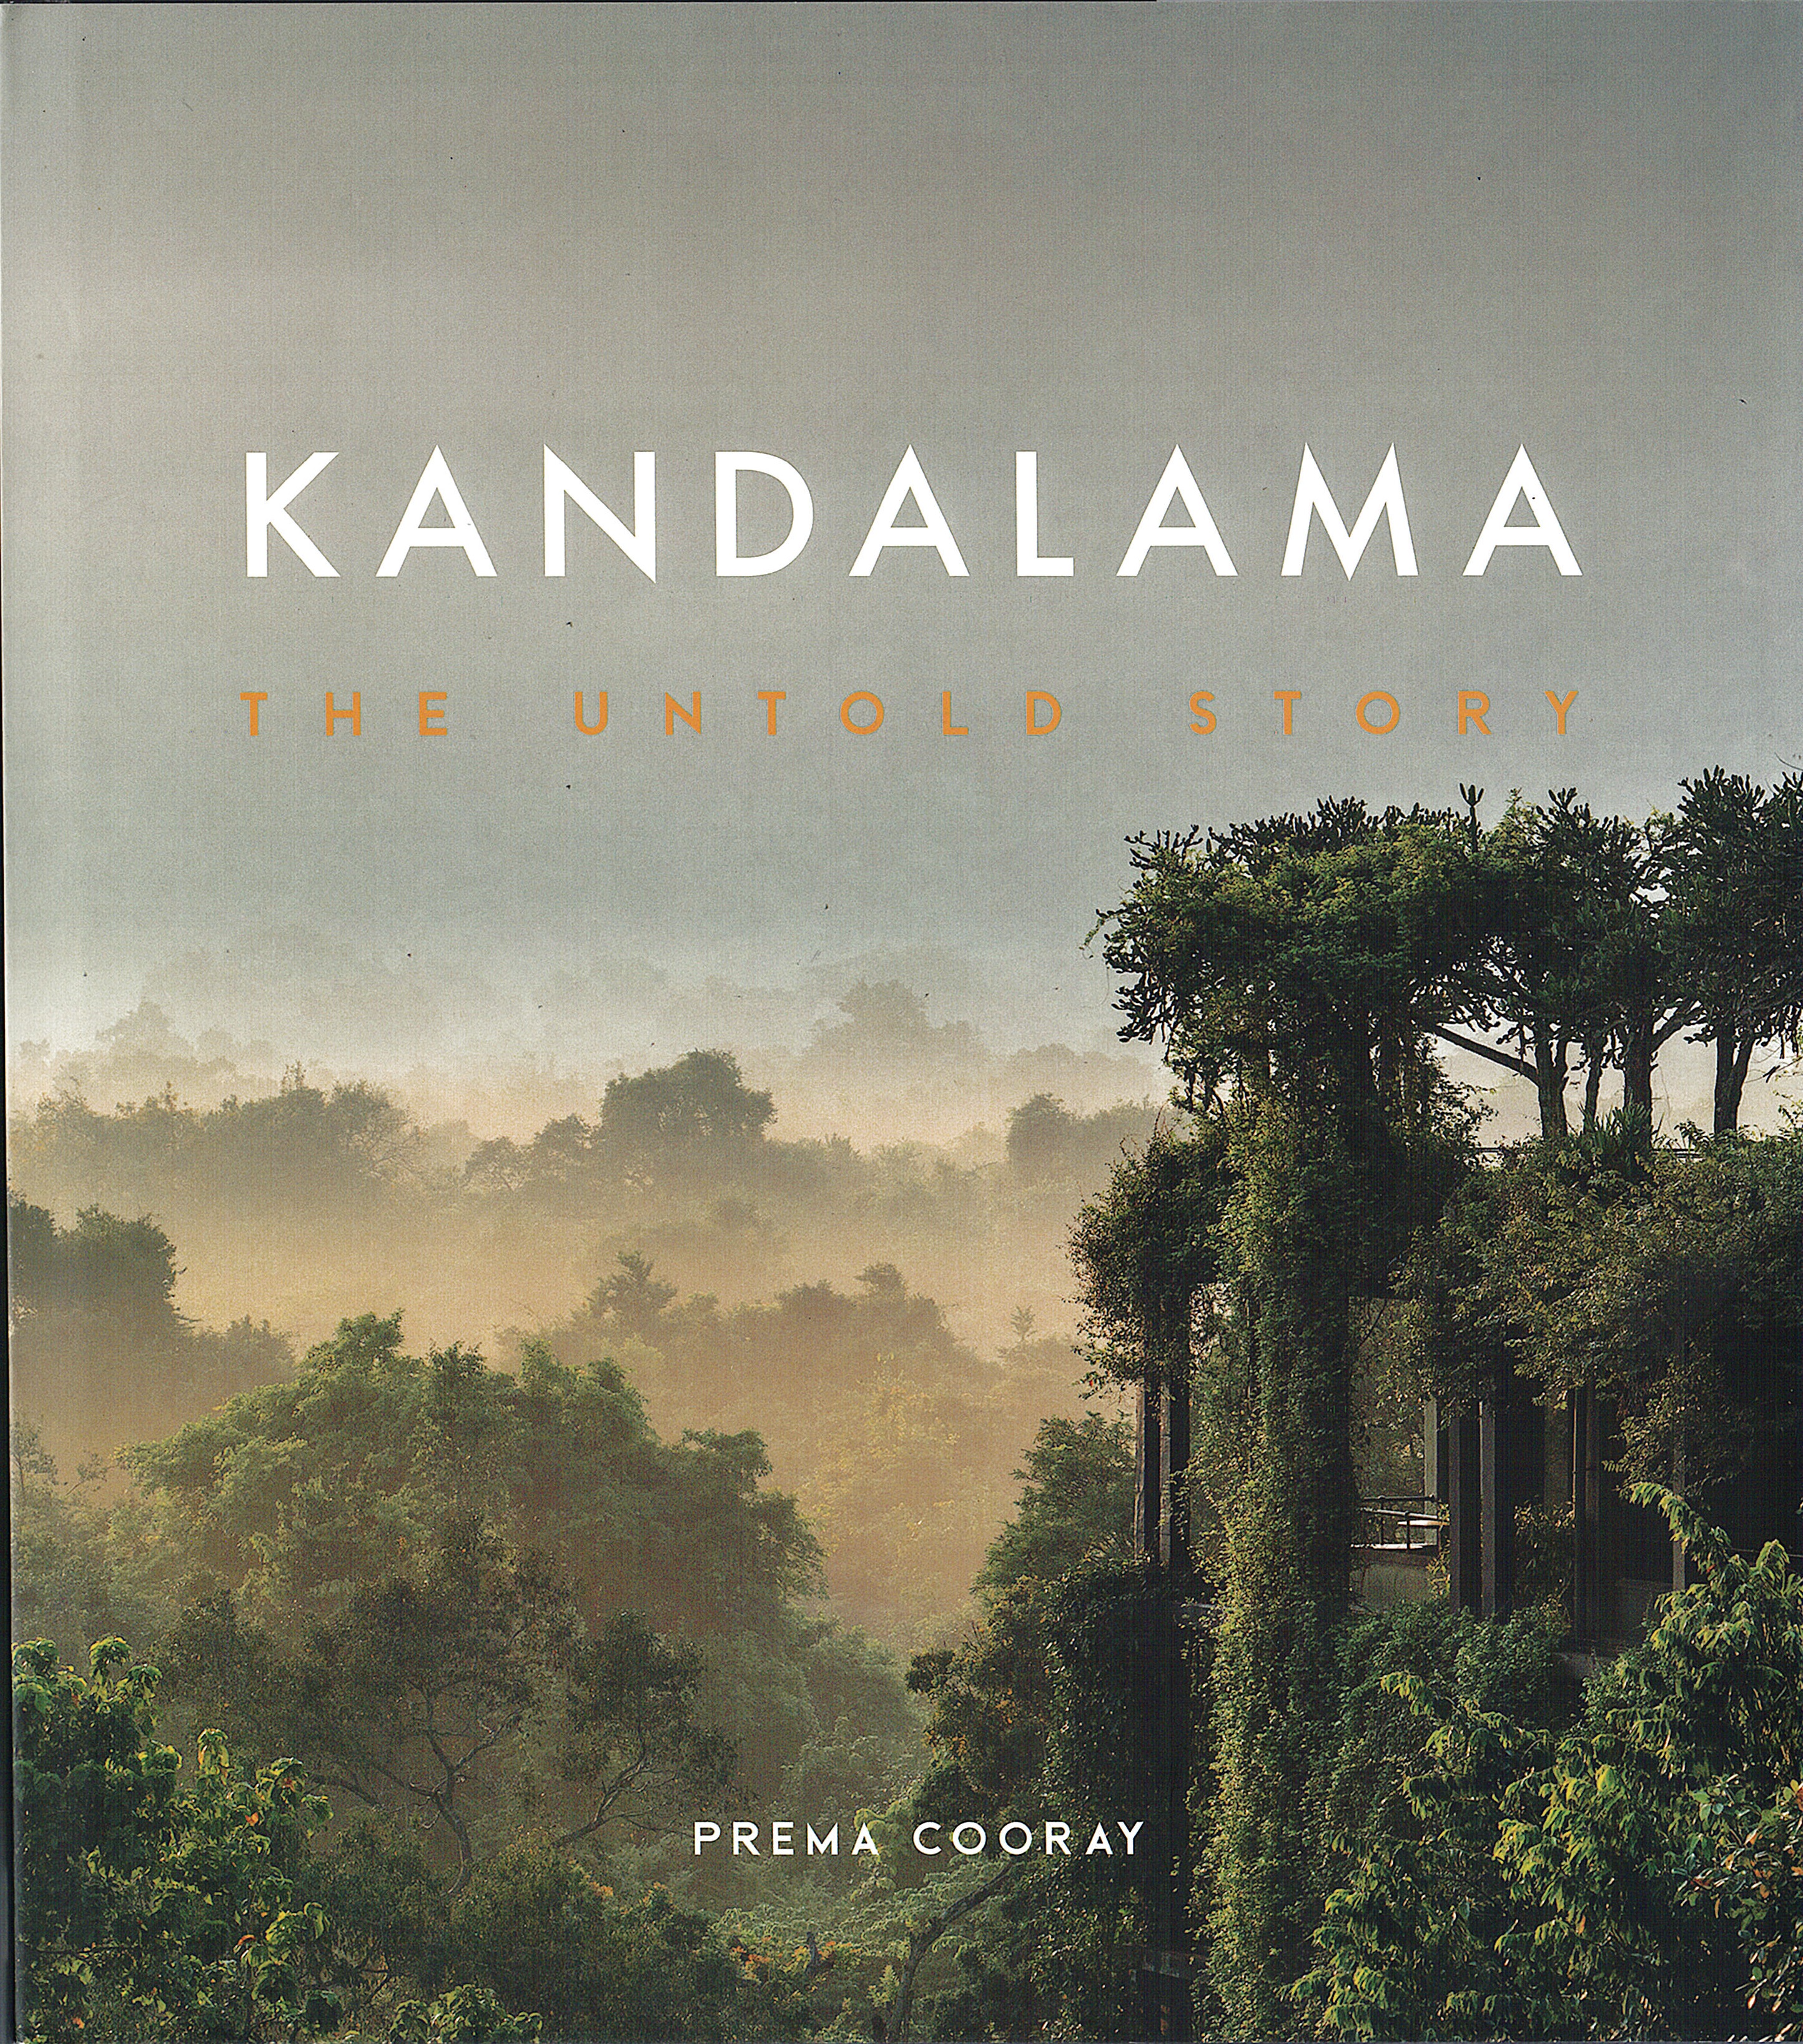 Kandalama the untold story